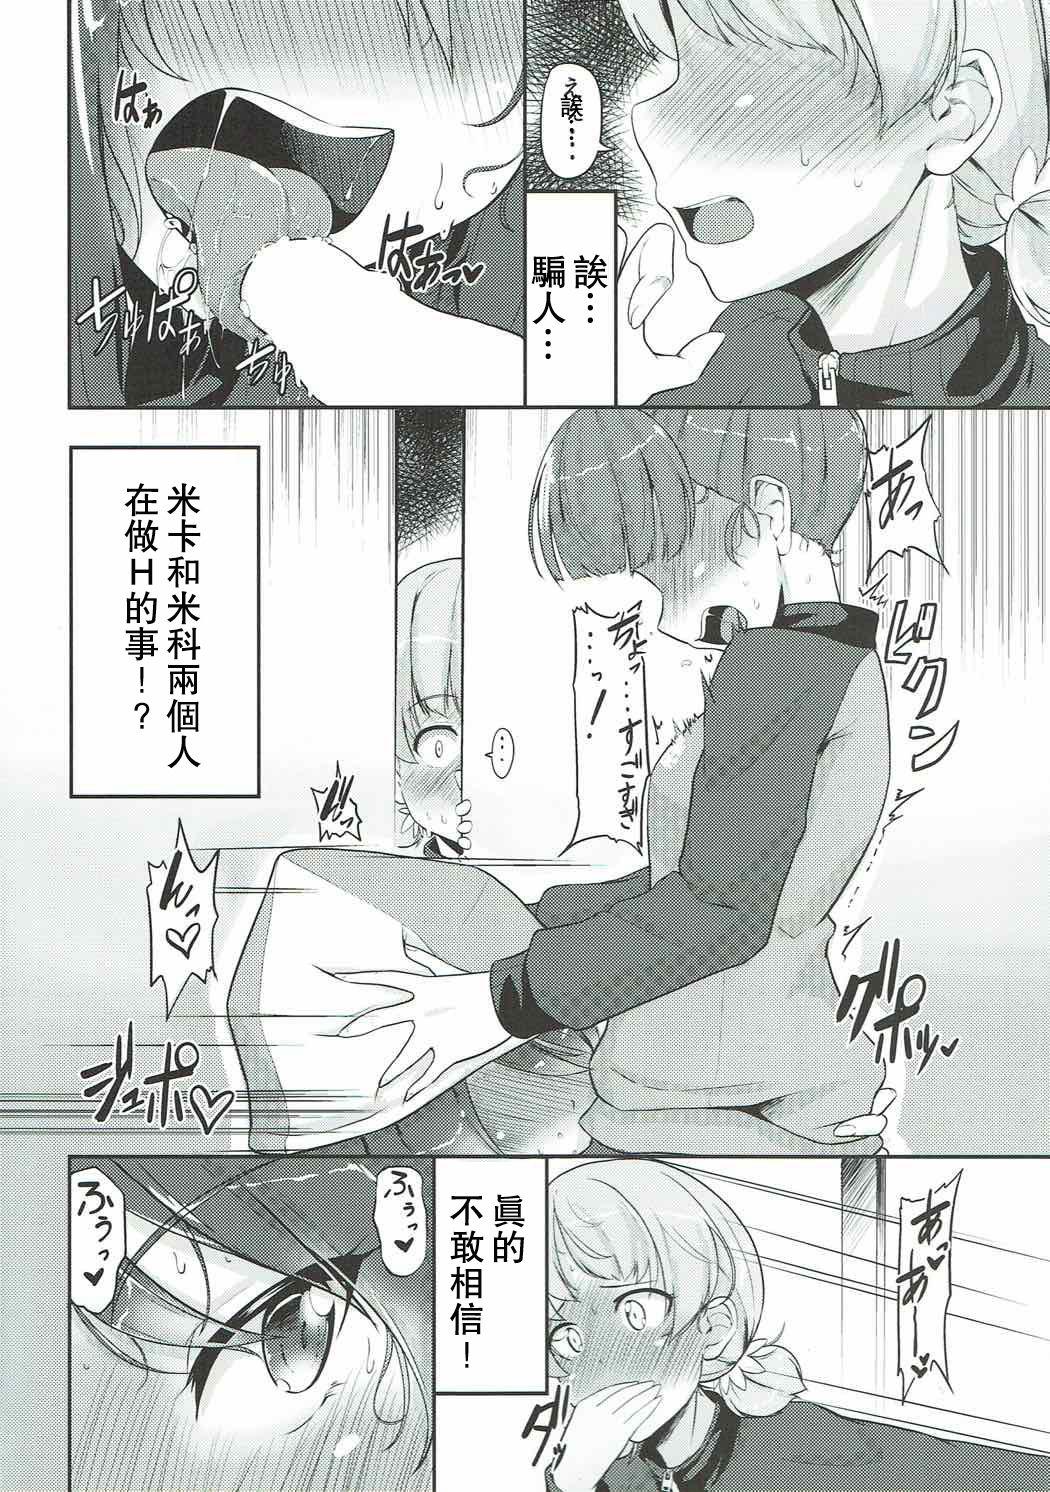 Transex Hakushin Senshadoubu Keizoku no Urawaza - Girls und panzer Francais - Page 4